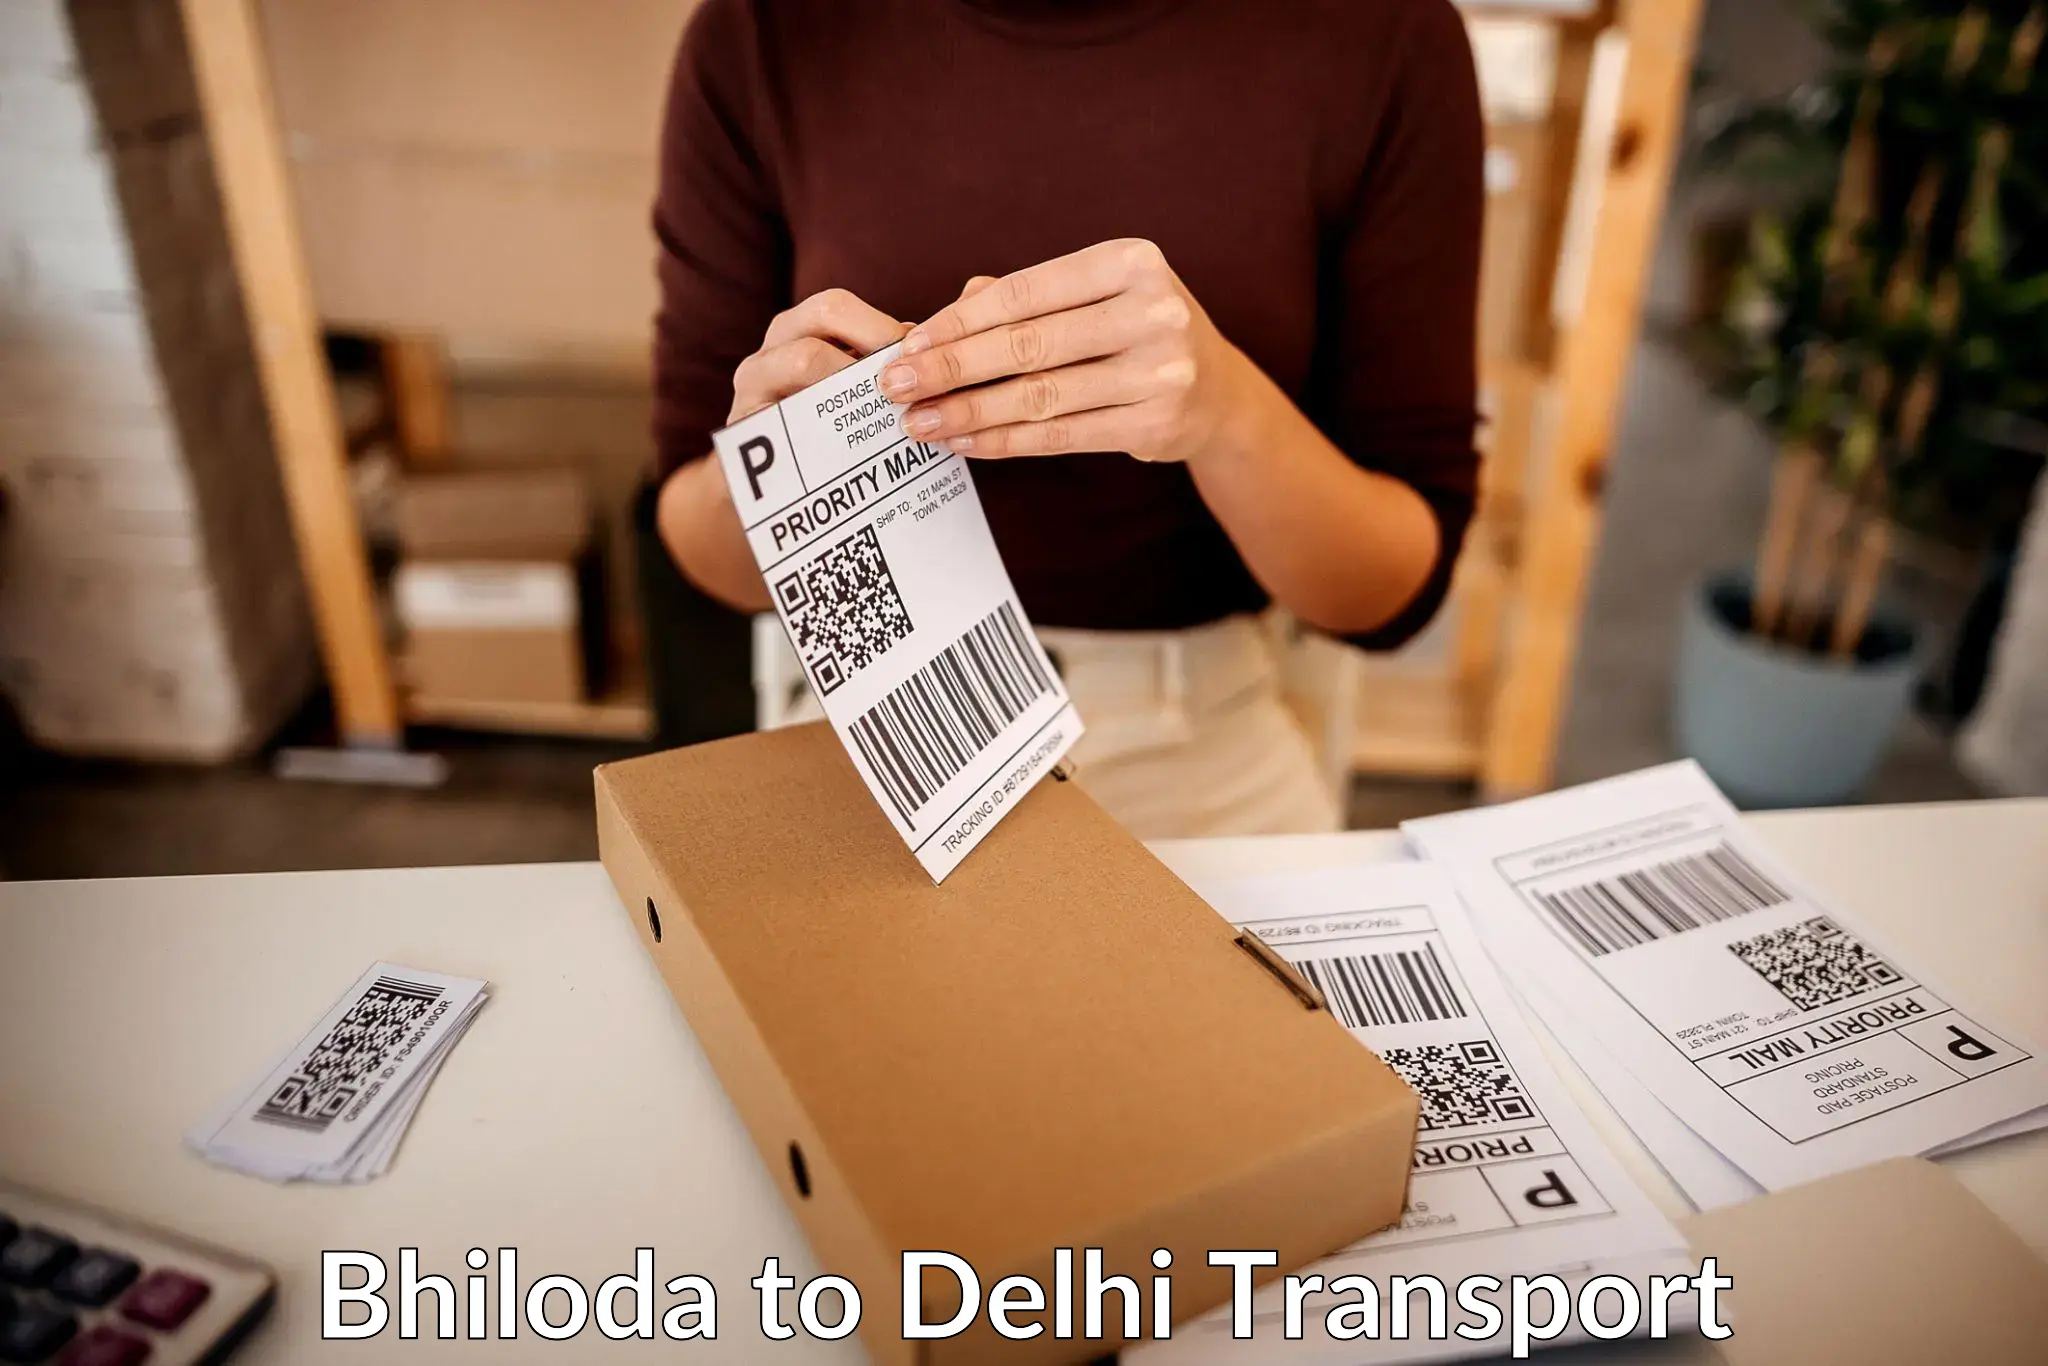 India truck logistics services Bhiloda to NIT Delhi